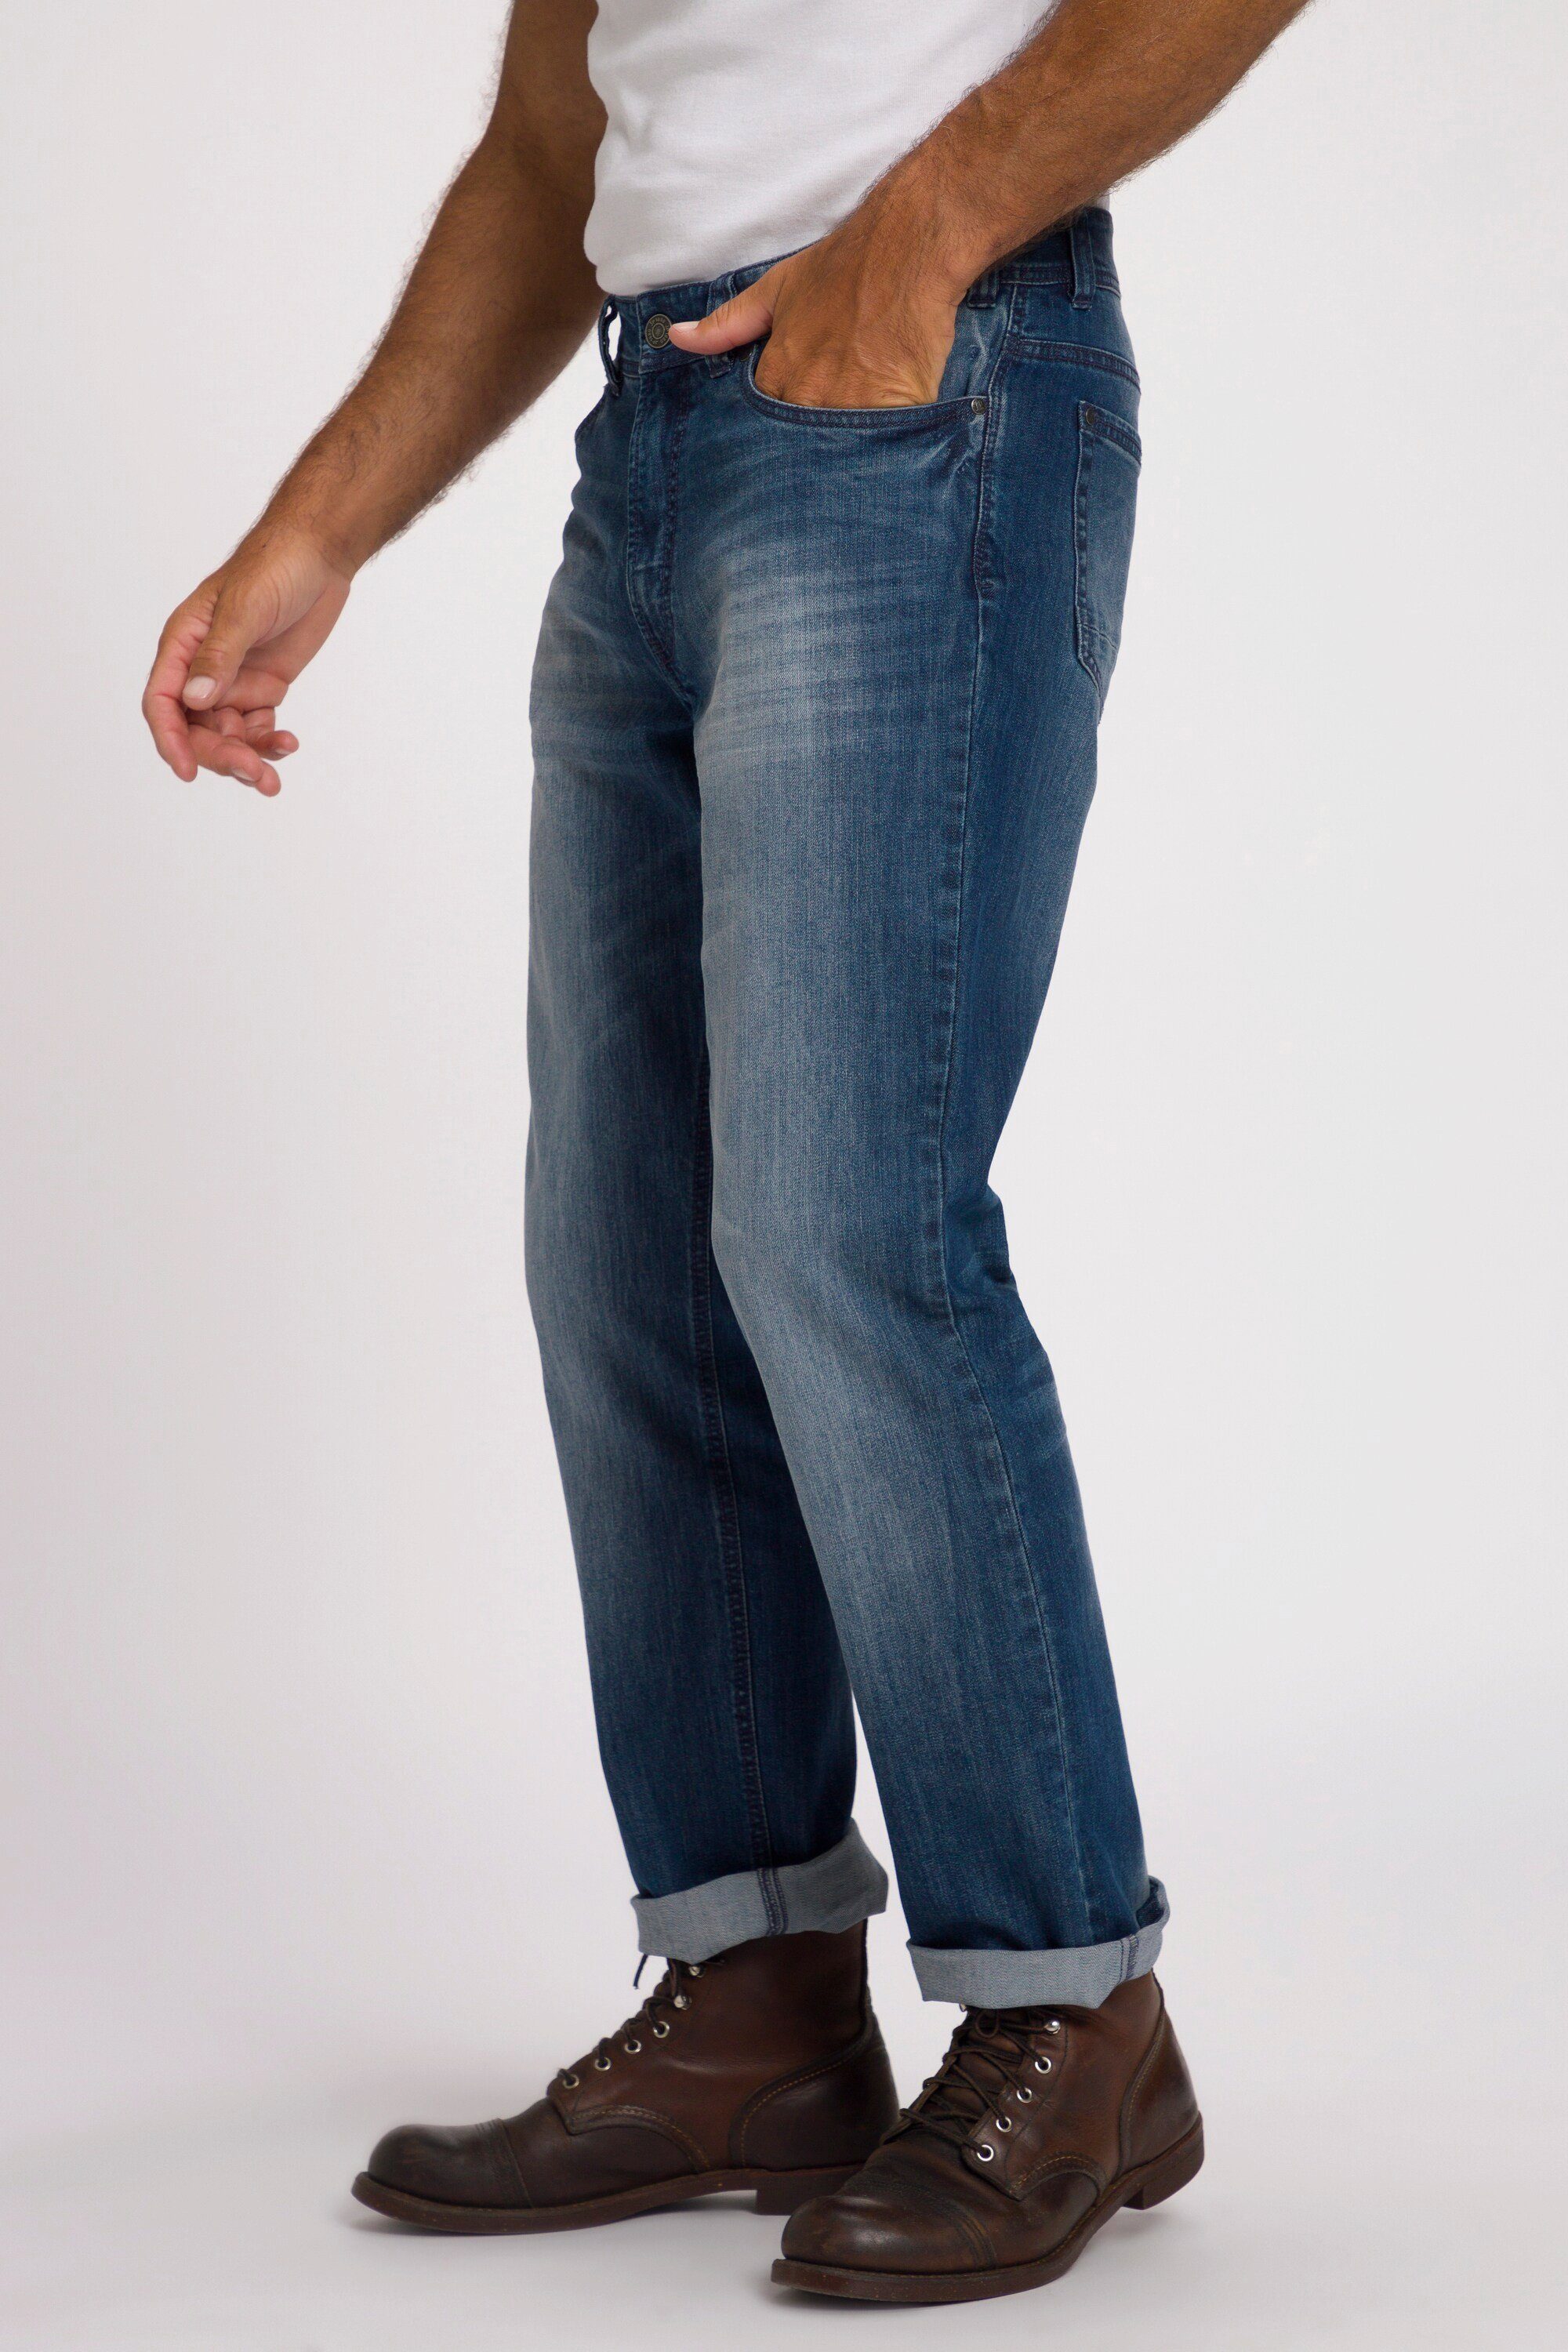 JP1880 Cargohose Denim Jeans 5-Pocket Denim Regular blue Fit denim